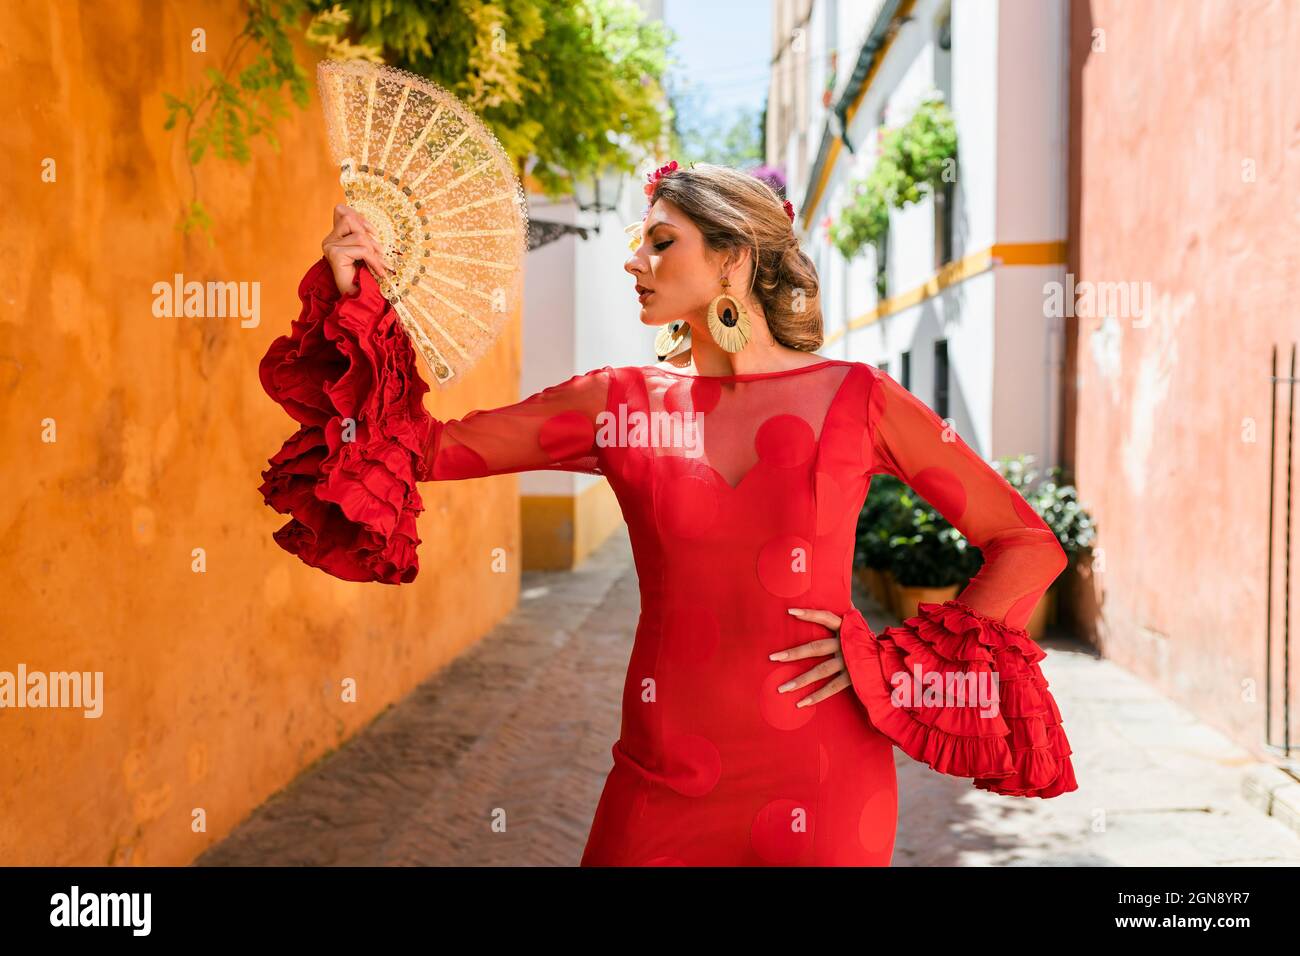 Danseuse avec un ventilateur traditionnel et une robe debout dans une allée Banque D'Images